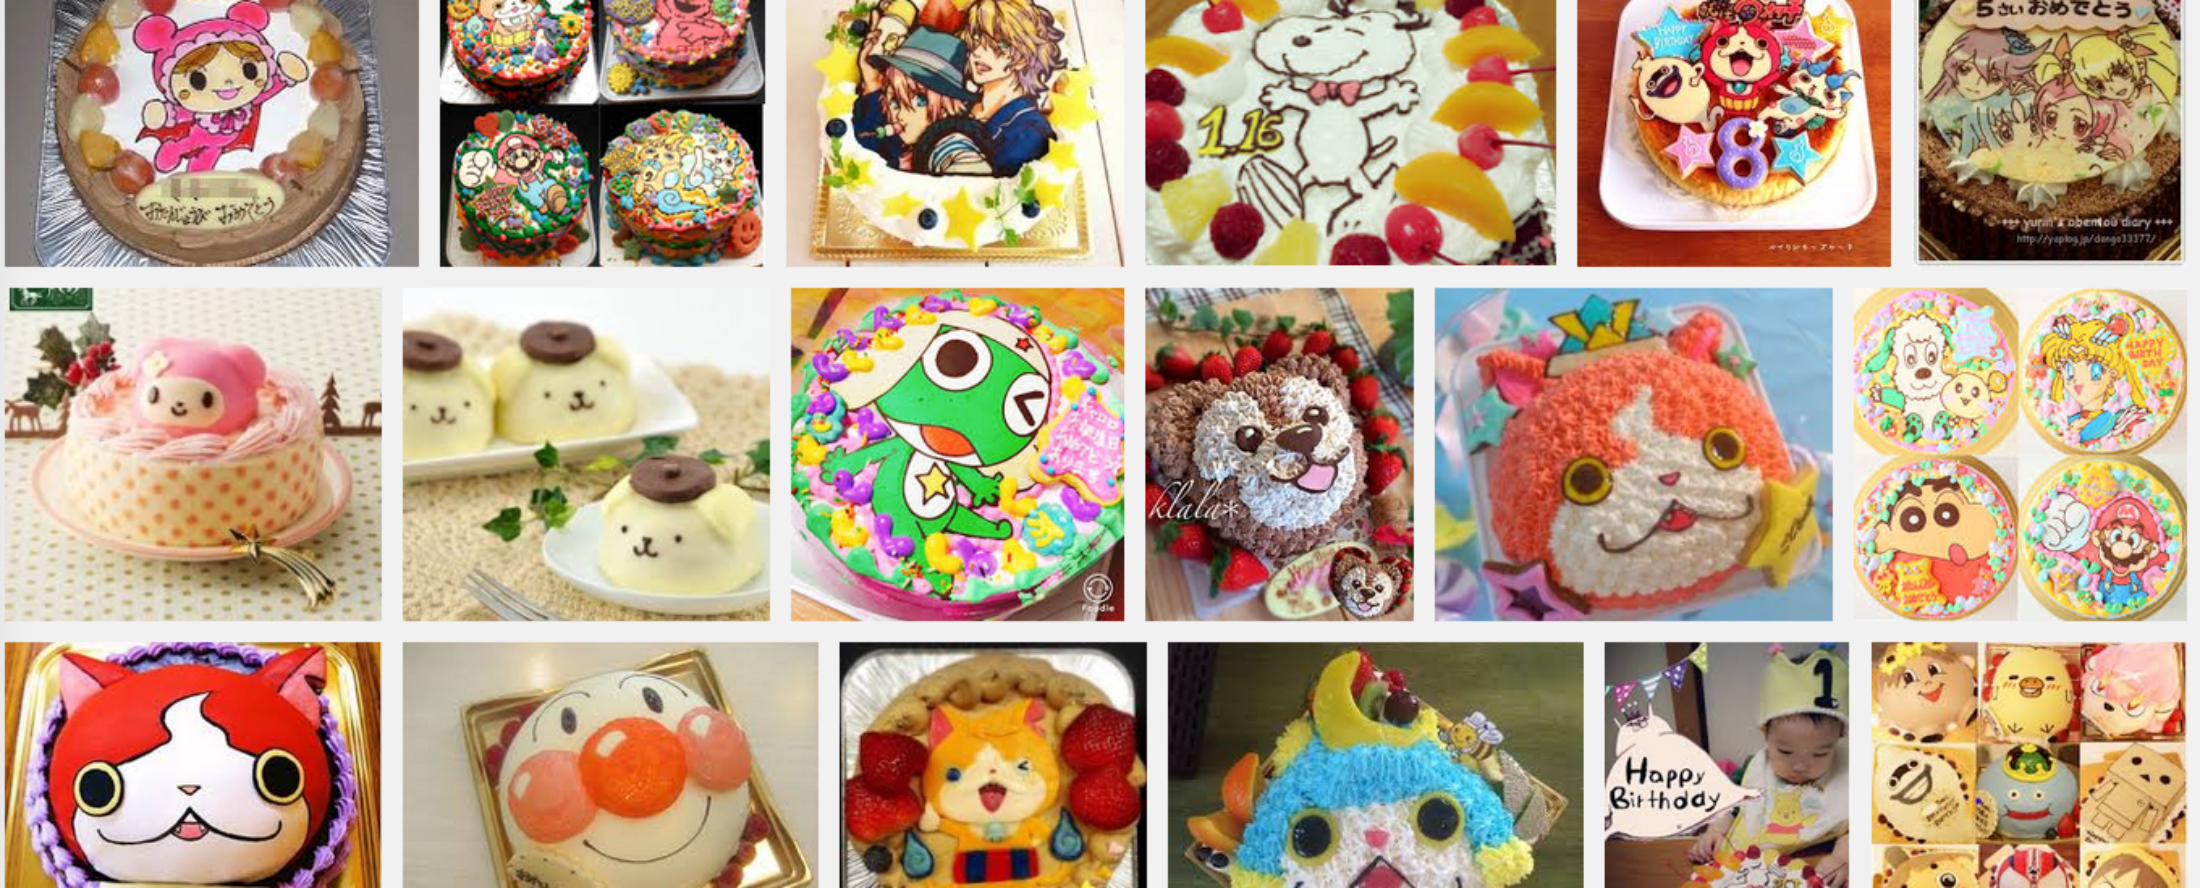 キャラクターケーキが注文できる新潟県のケーキ店 キャラケーキ通販ランキング